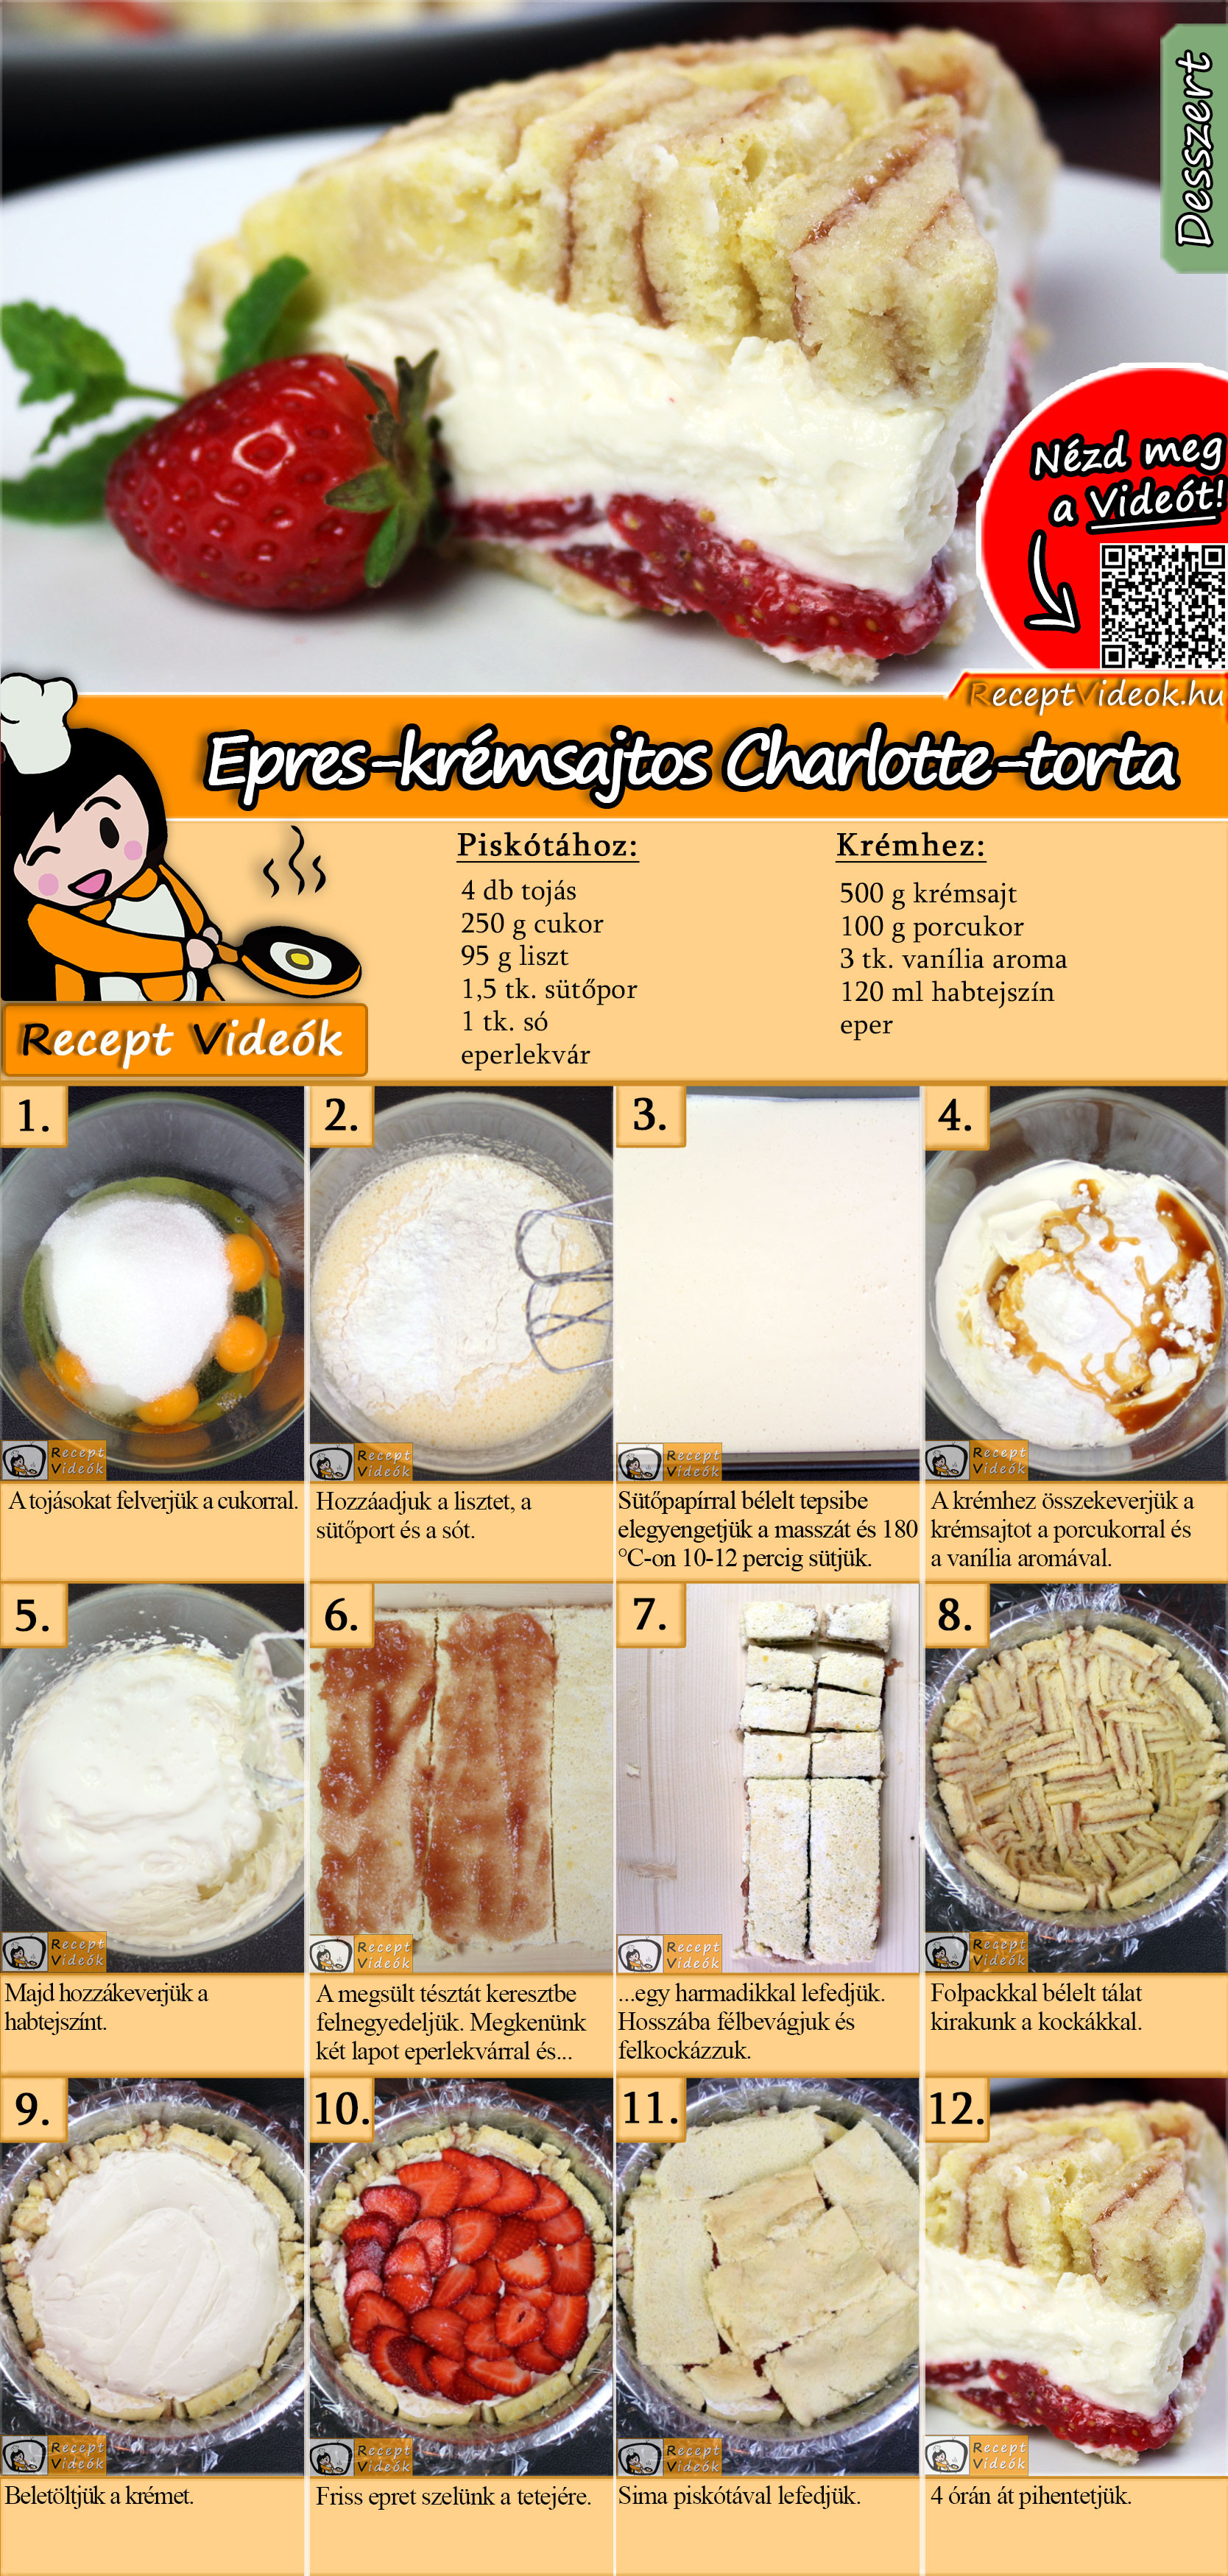 Epres-krémsajtos Charlotte-torta recept elkészítése videóval